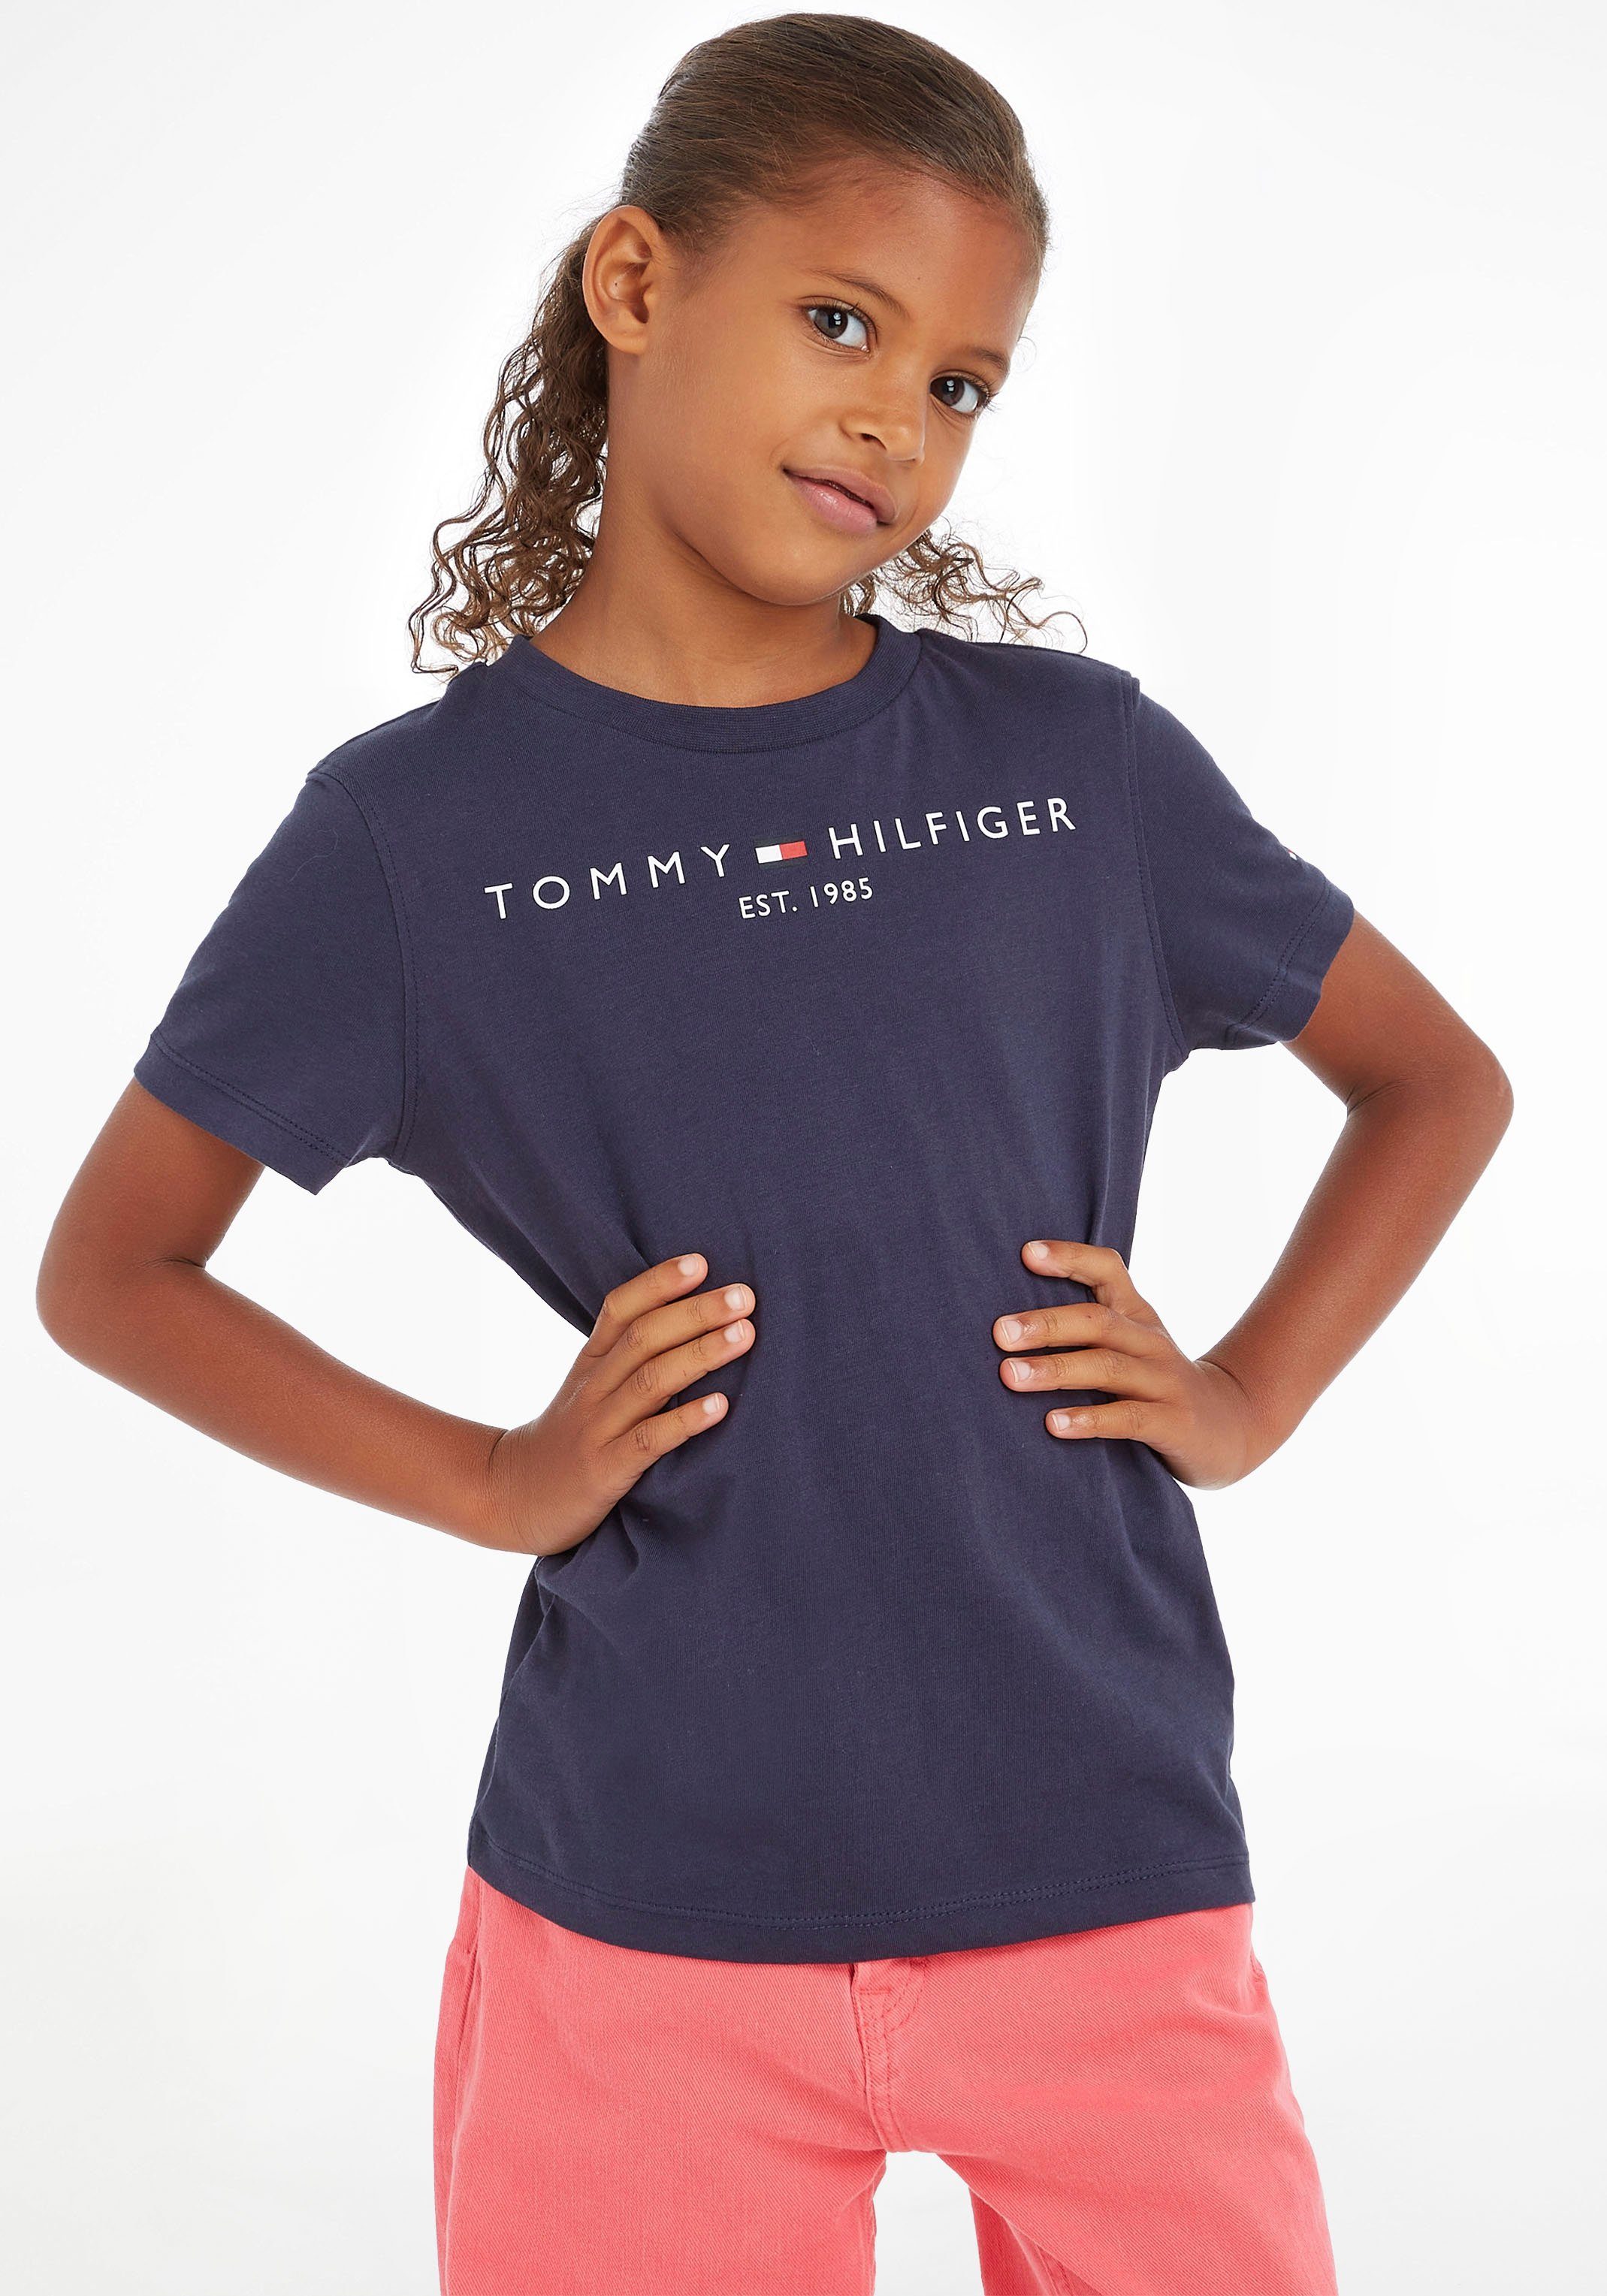 T-Shirt Junior Kinder Kids ESSENTIAL Mädchen TEE MiniMe,für Hilfiger Tommy und Jungen